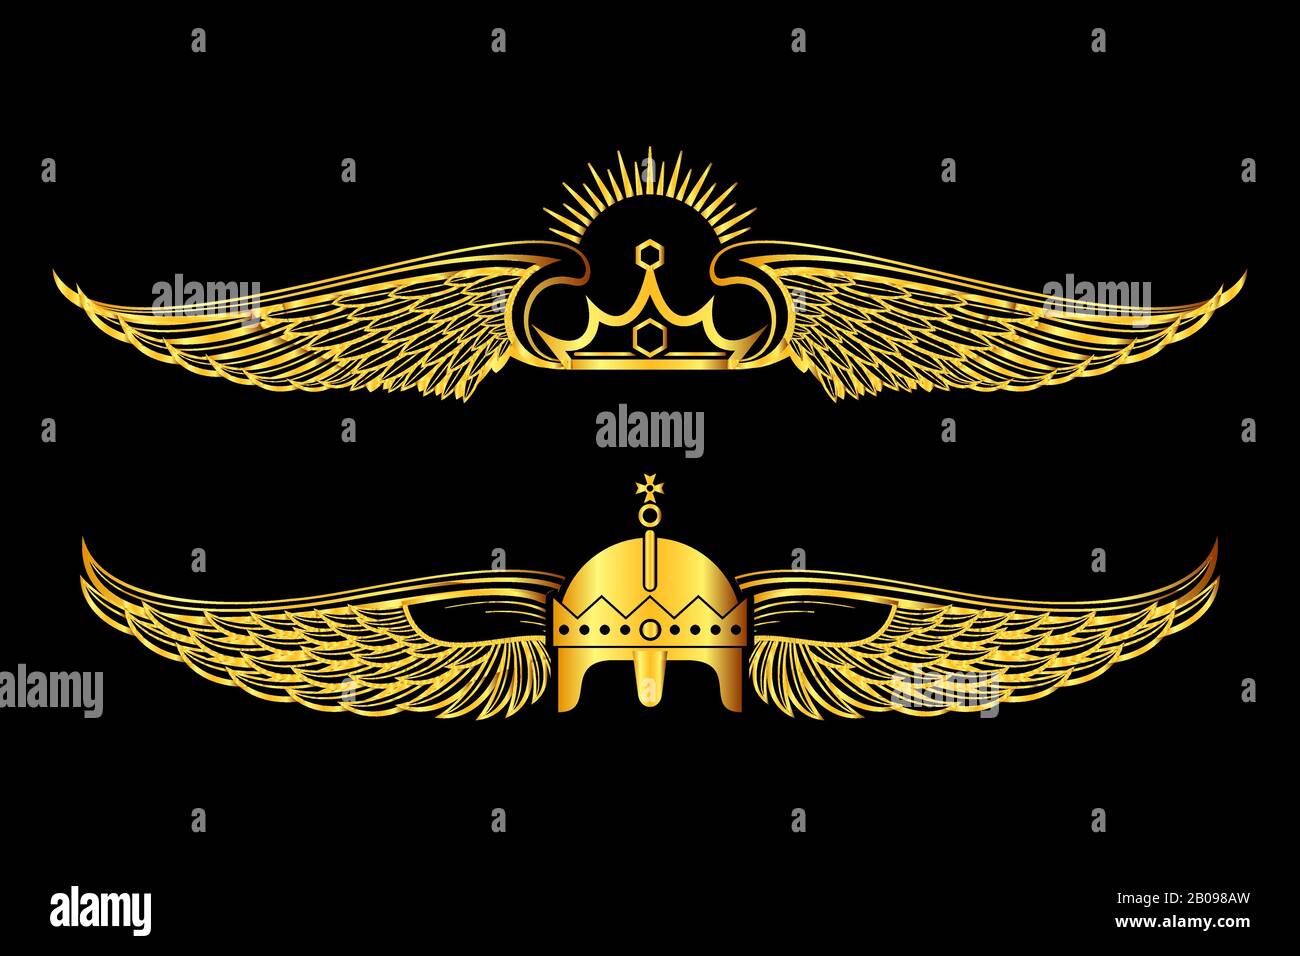 Set of golden winged crowns logos black background. Royal banner elegance collection illustration Stock Vector